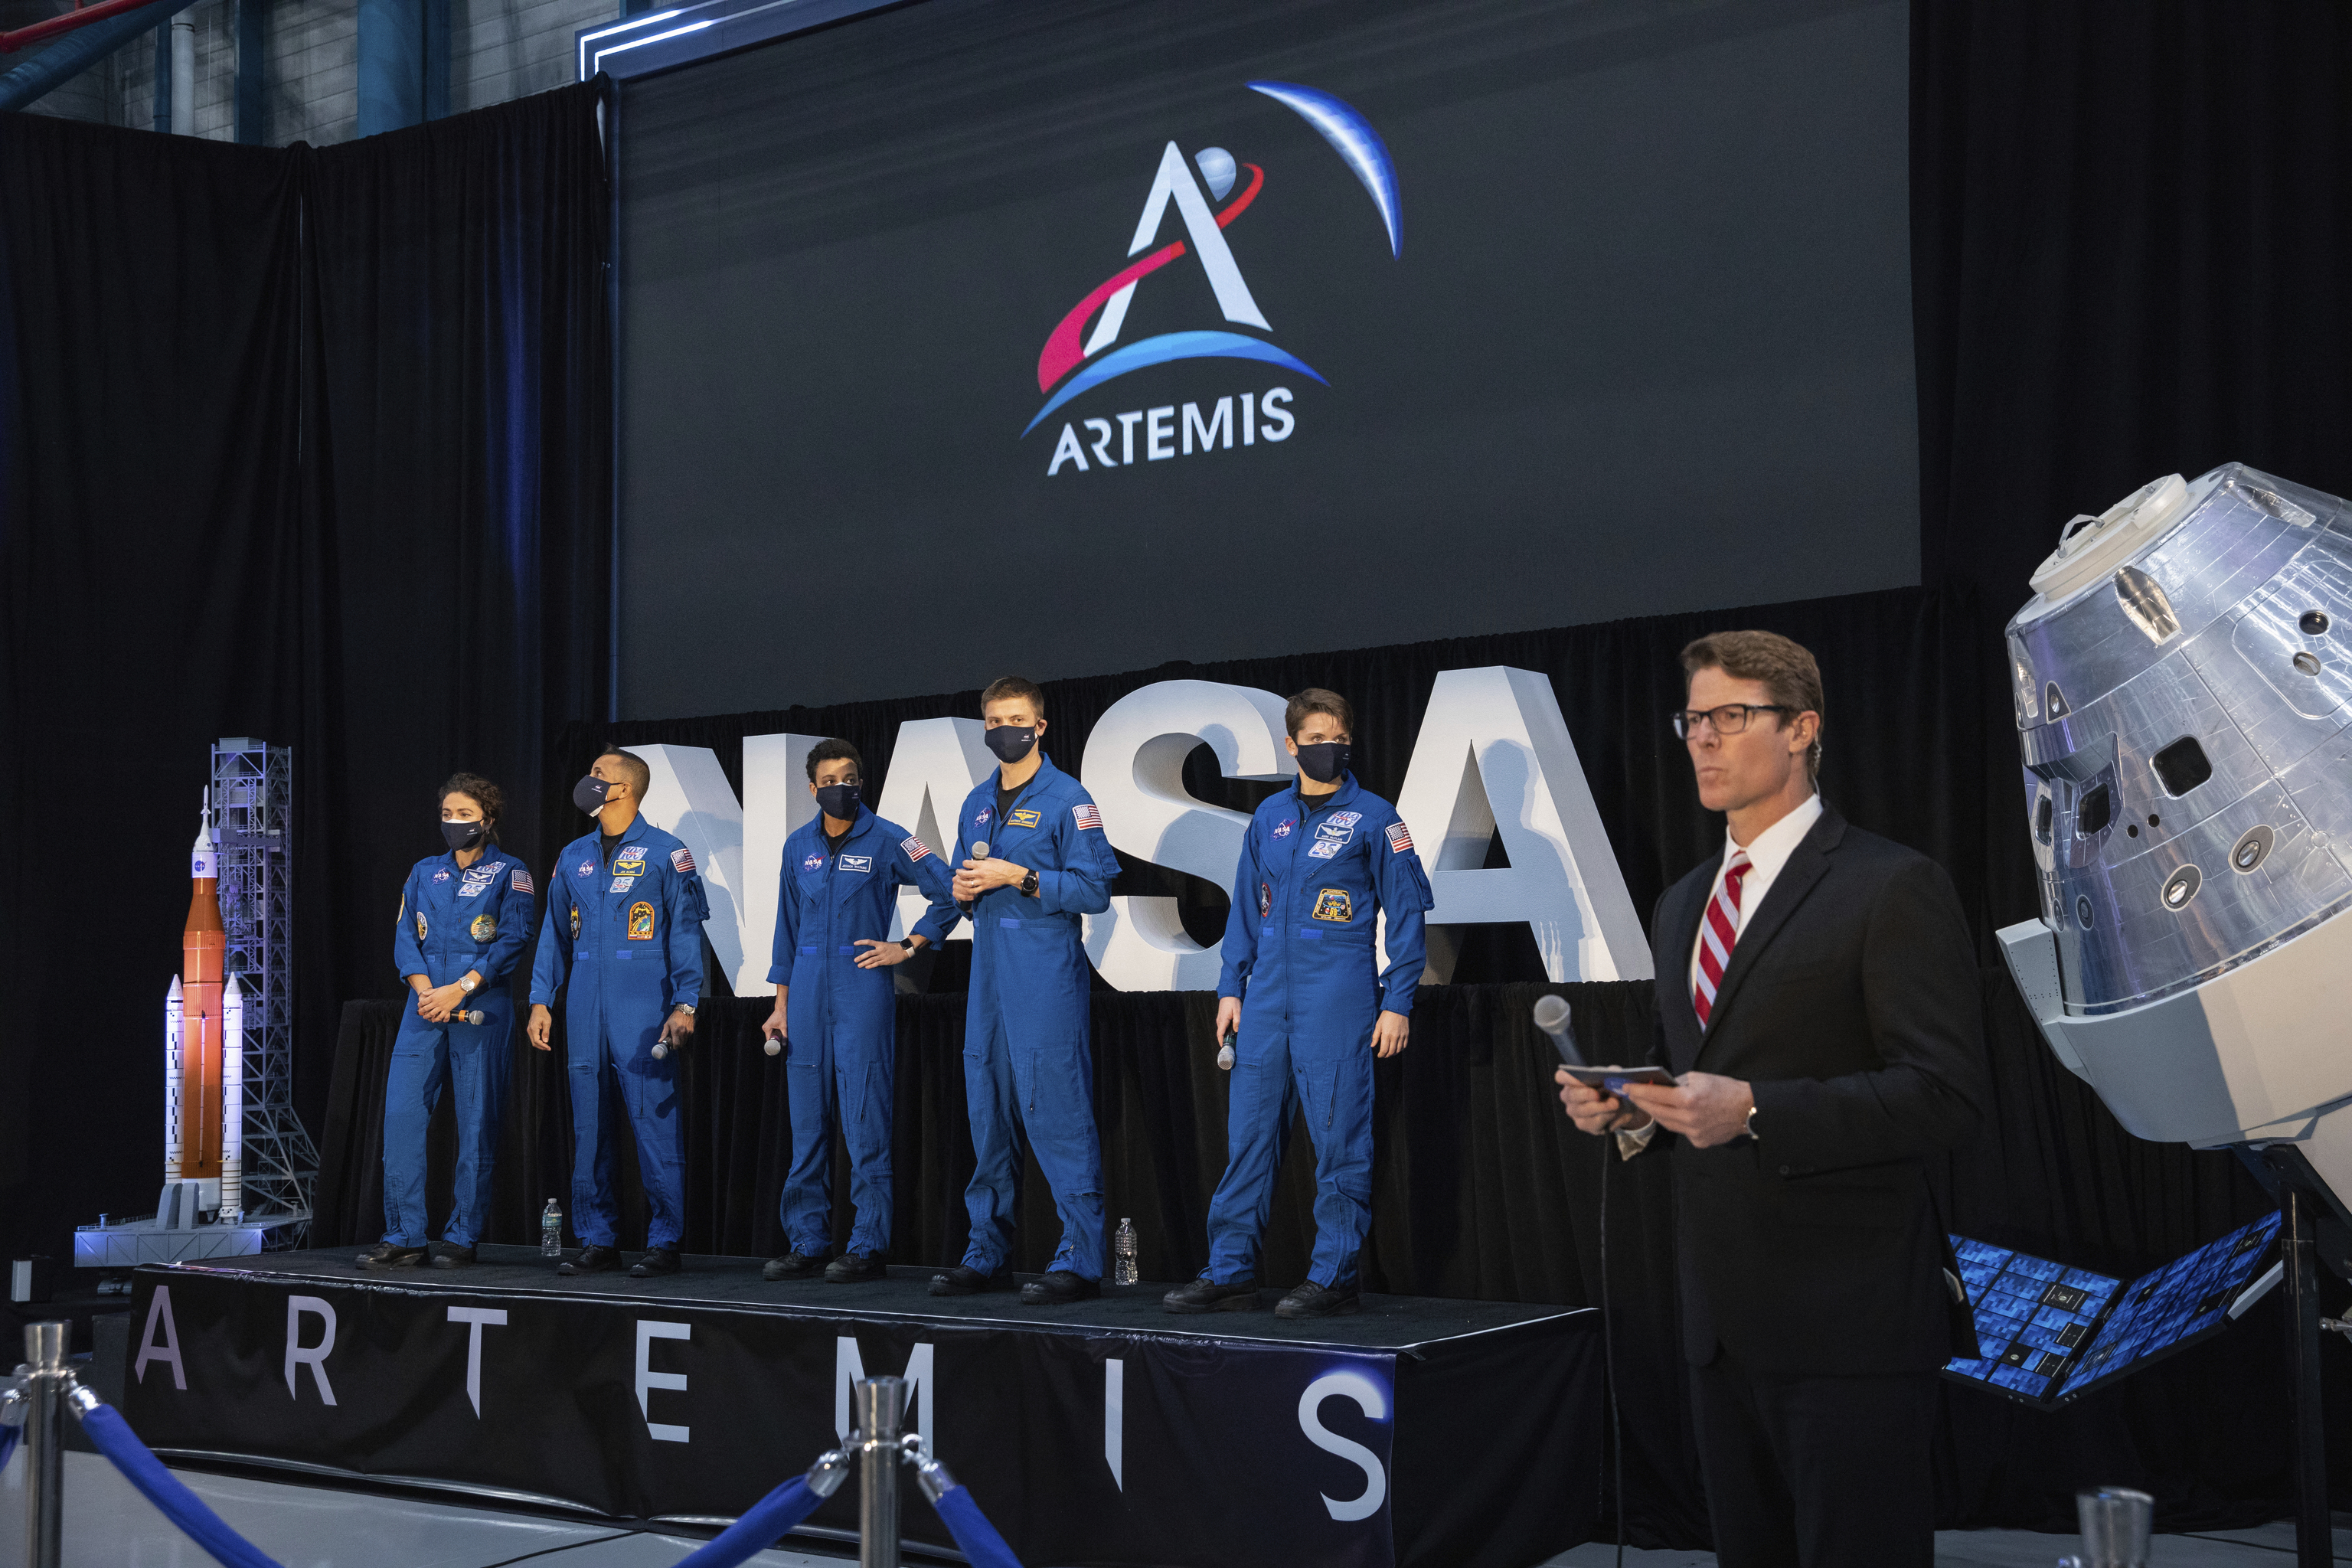 El equipo inicial de 18 astronautas elegibles para las primeras misiones Artemis en y alrededor de la Luna.